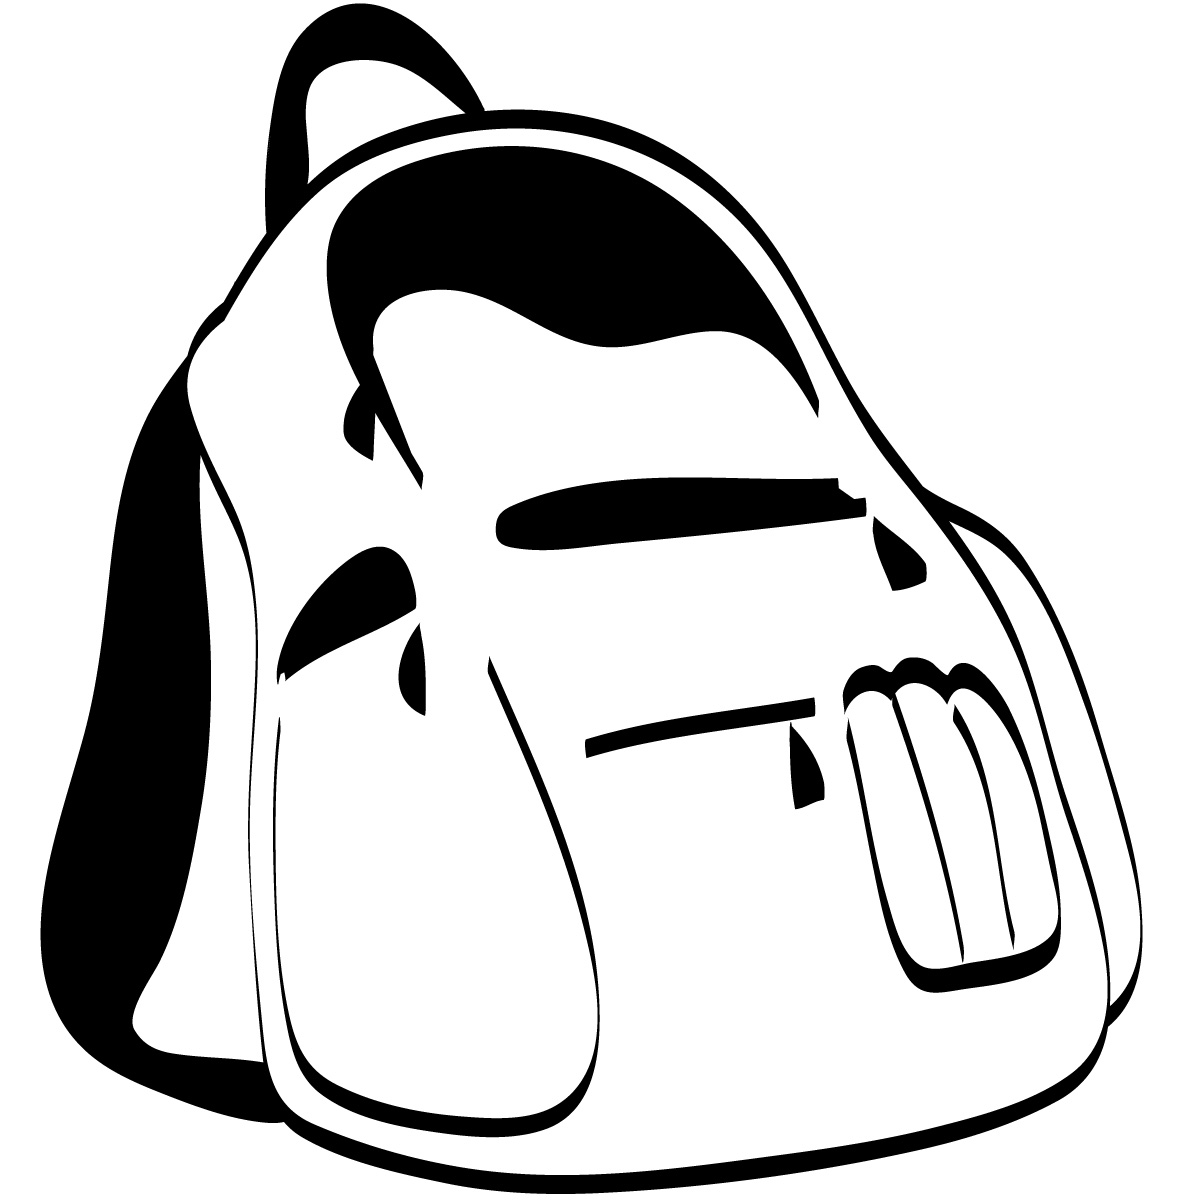 School bag clipart black